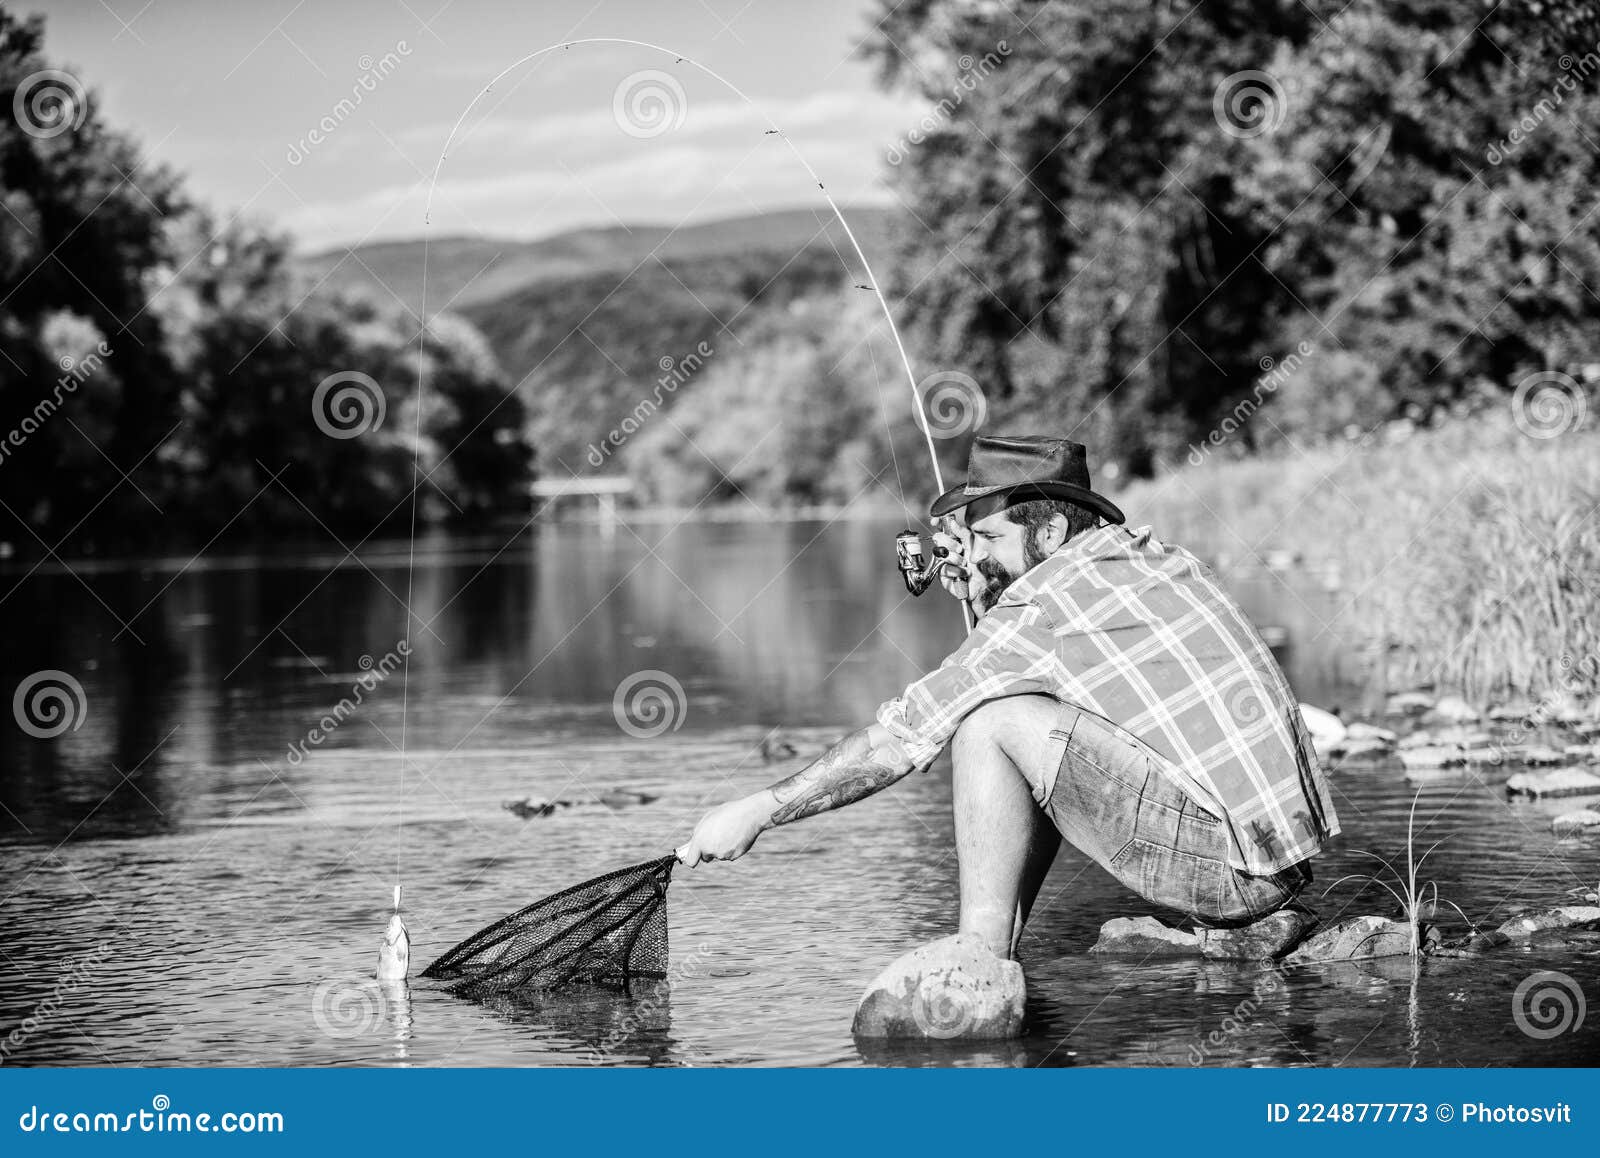 Women Big Game Sport Fishing